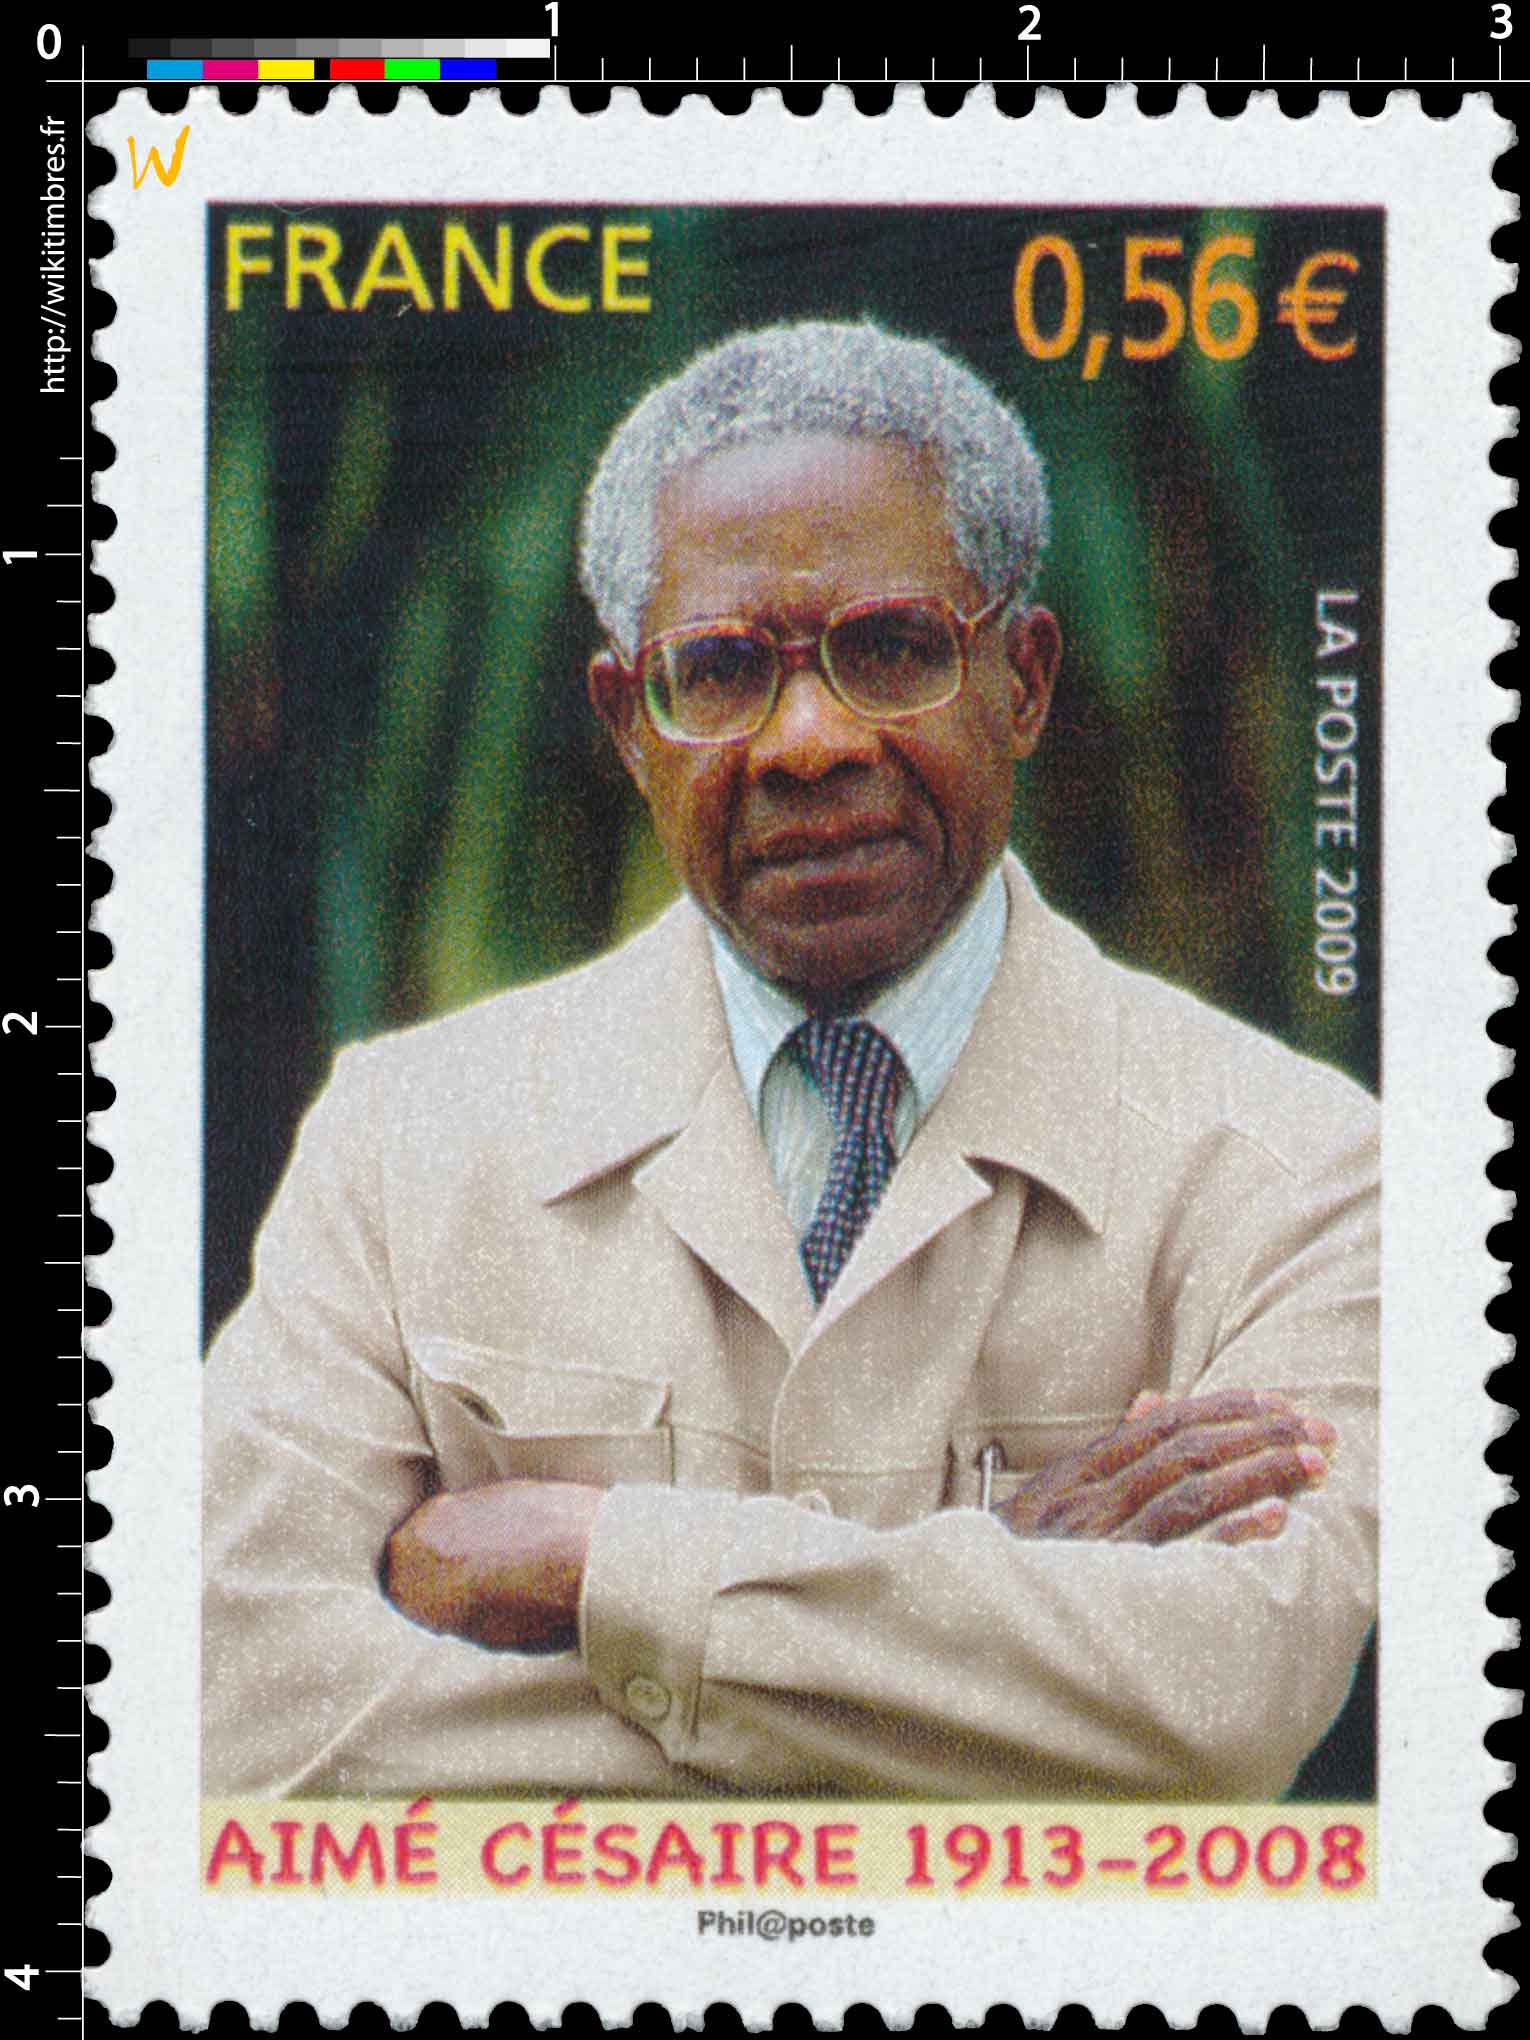 2009 AIMÉ CÉSAIRE 1913-2008